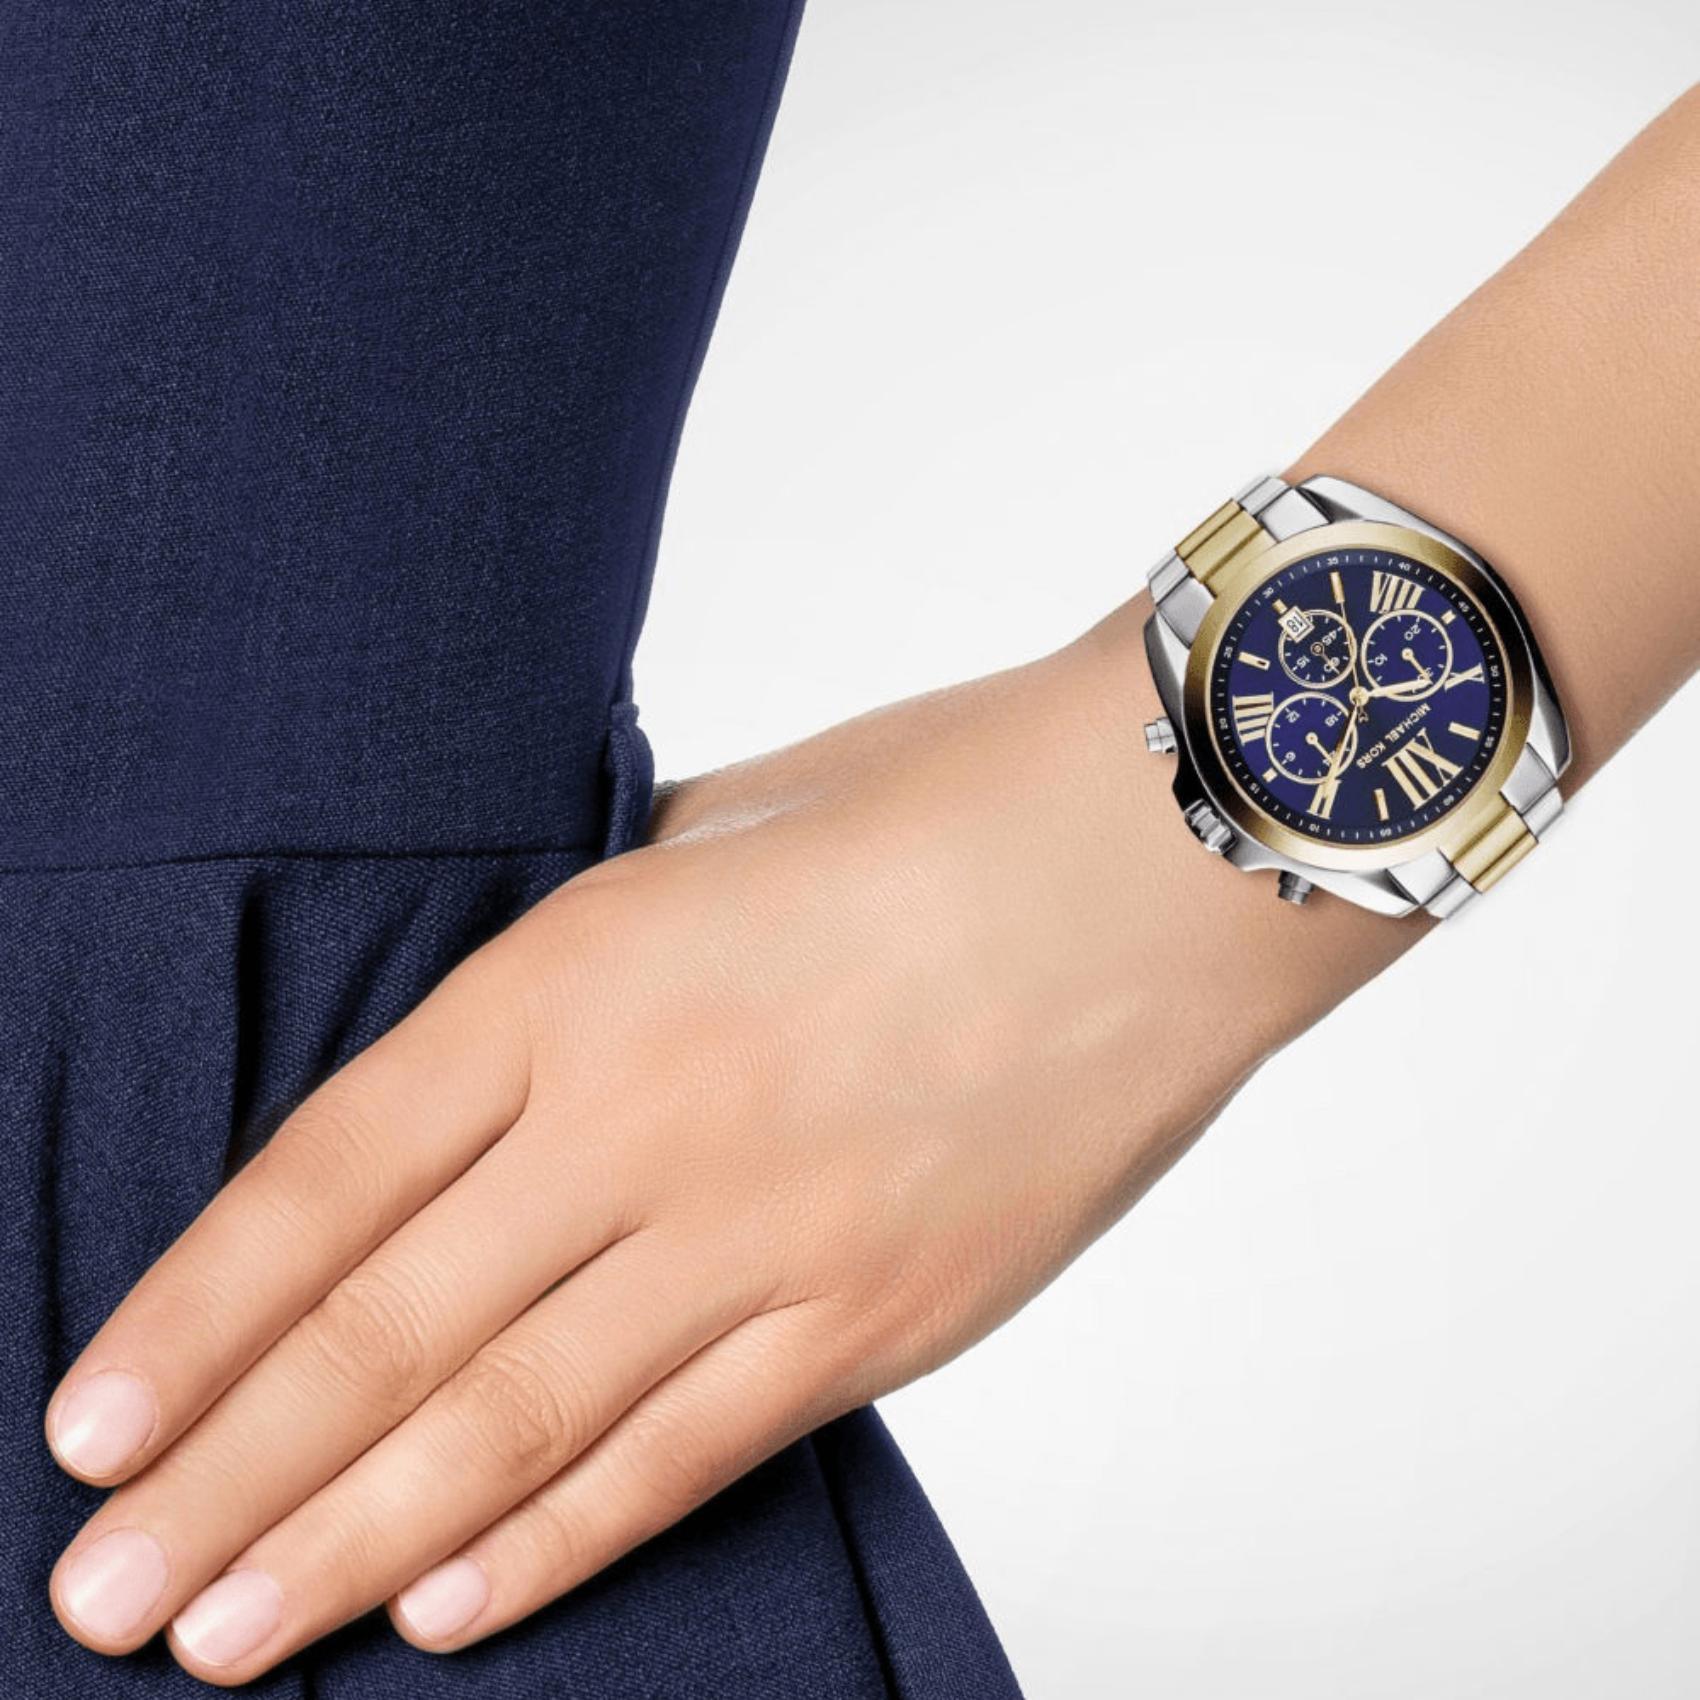 Γυναικείο ρολόι Michael Kors Bradshaw MK5976 χρονογράφος με δίχρωμο ατσάλινο μπρασελέ σε χρυσό-ασημί χρώμα, στρογγυλό μπλε καντράν με ημερομηνία και στεφάνι 42mm.